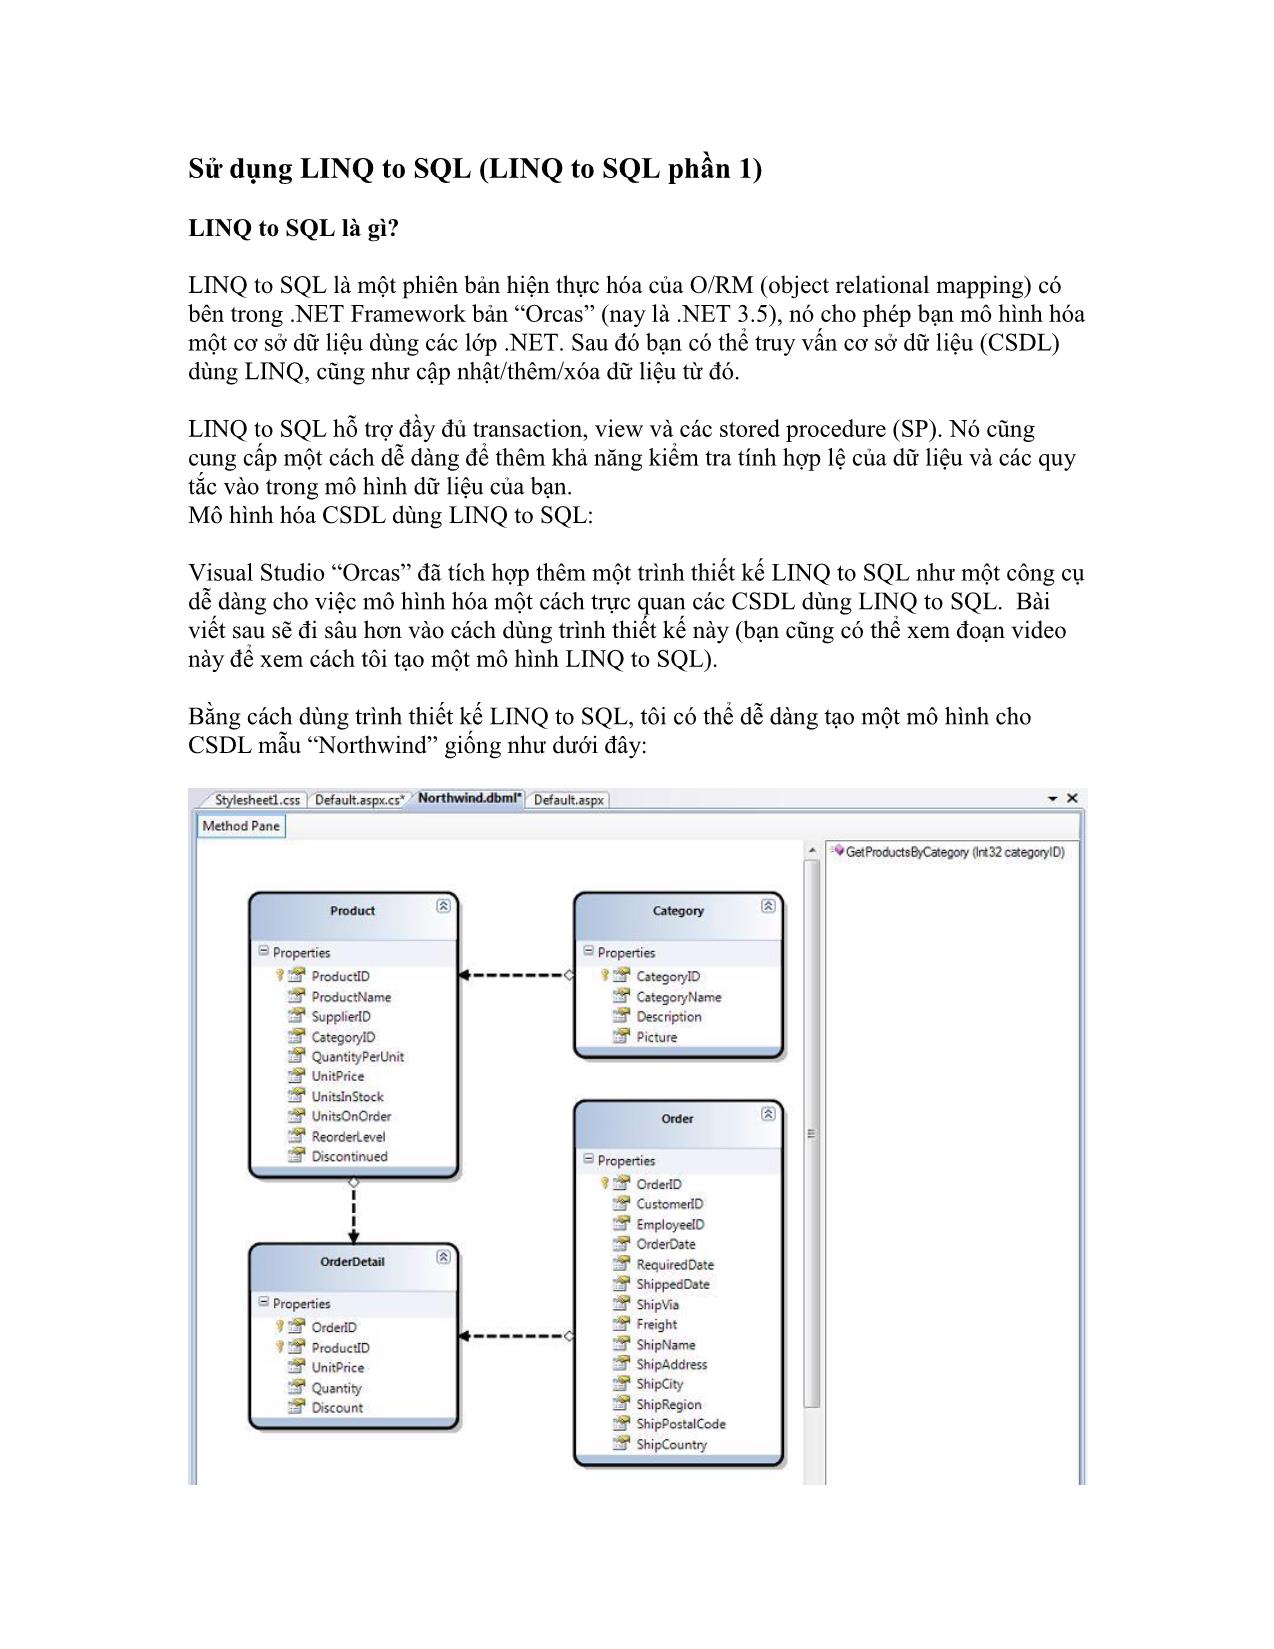 Sử dụng LINQ to SQL trang 1